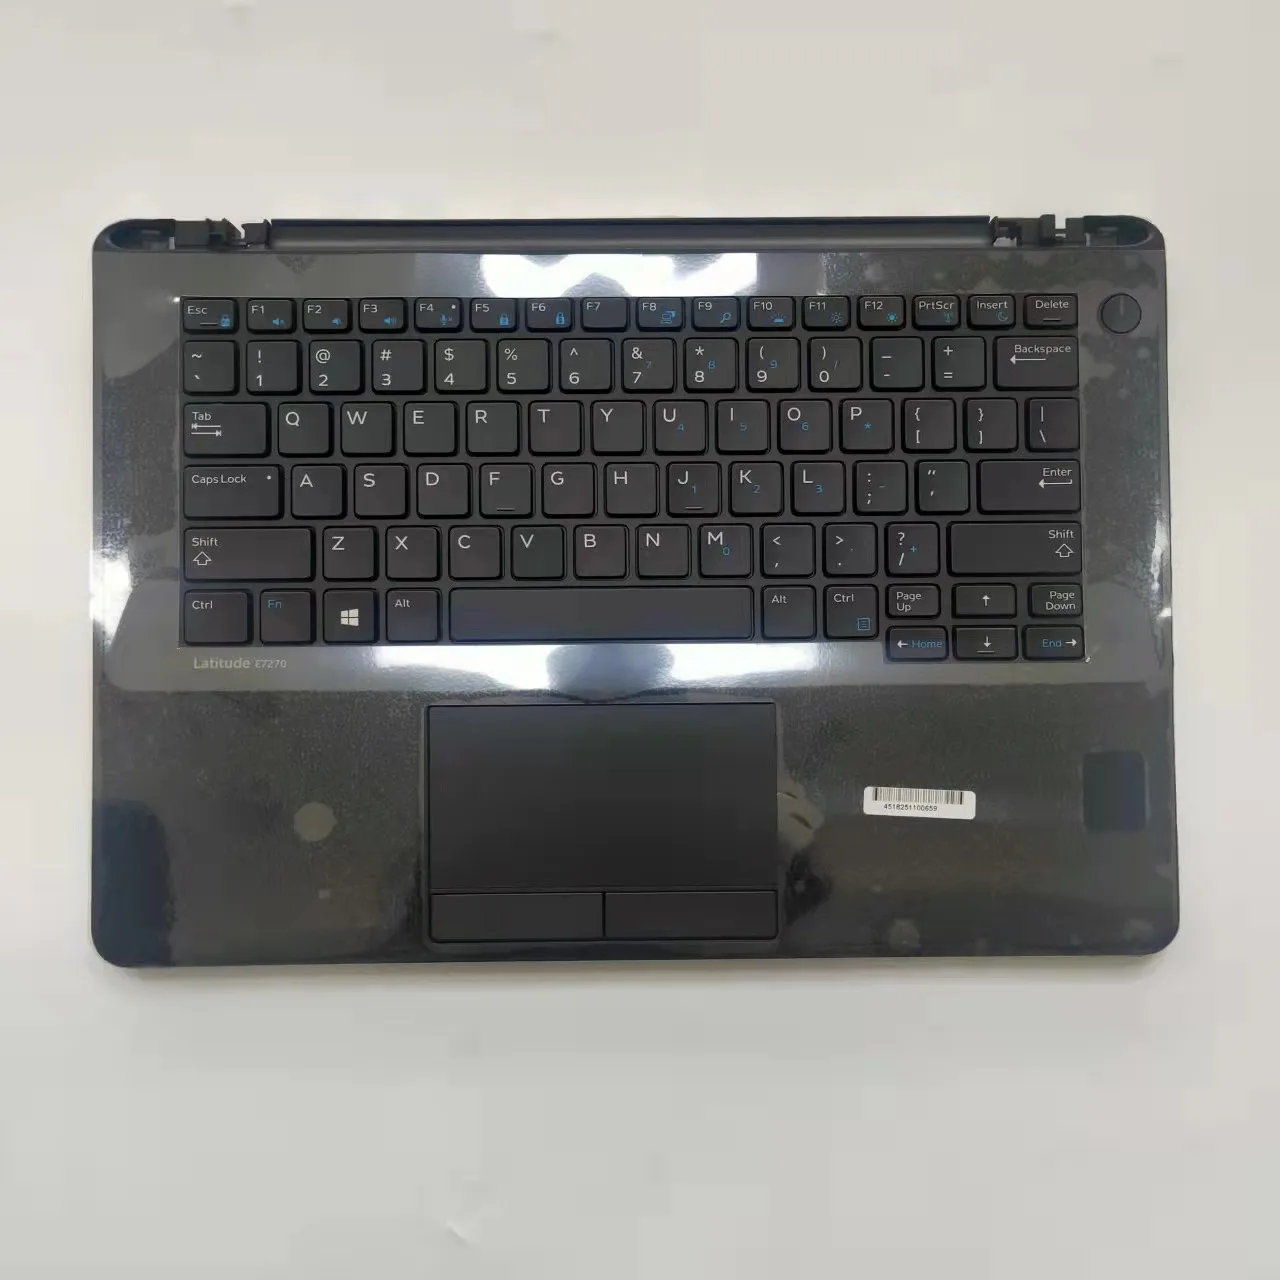 Cartes nouveau clavier Palmrest tactile pavé pour Dell Latitude 7270 E7270 0p1j5d 0jfdhr Black Us